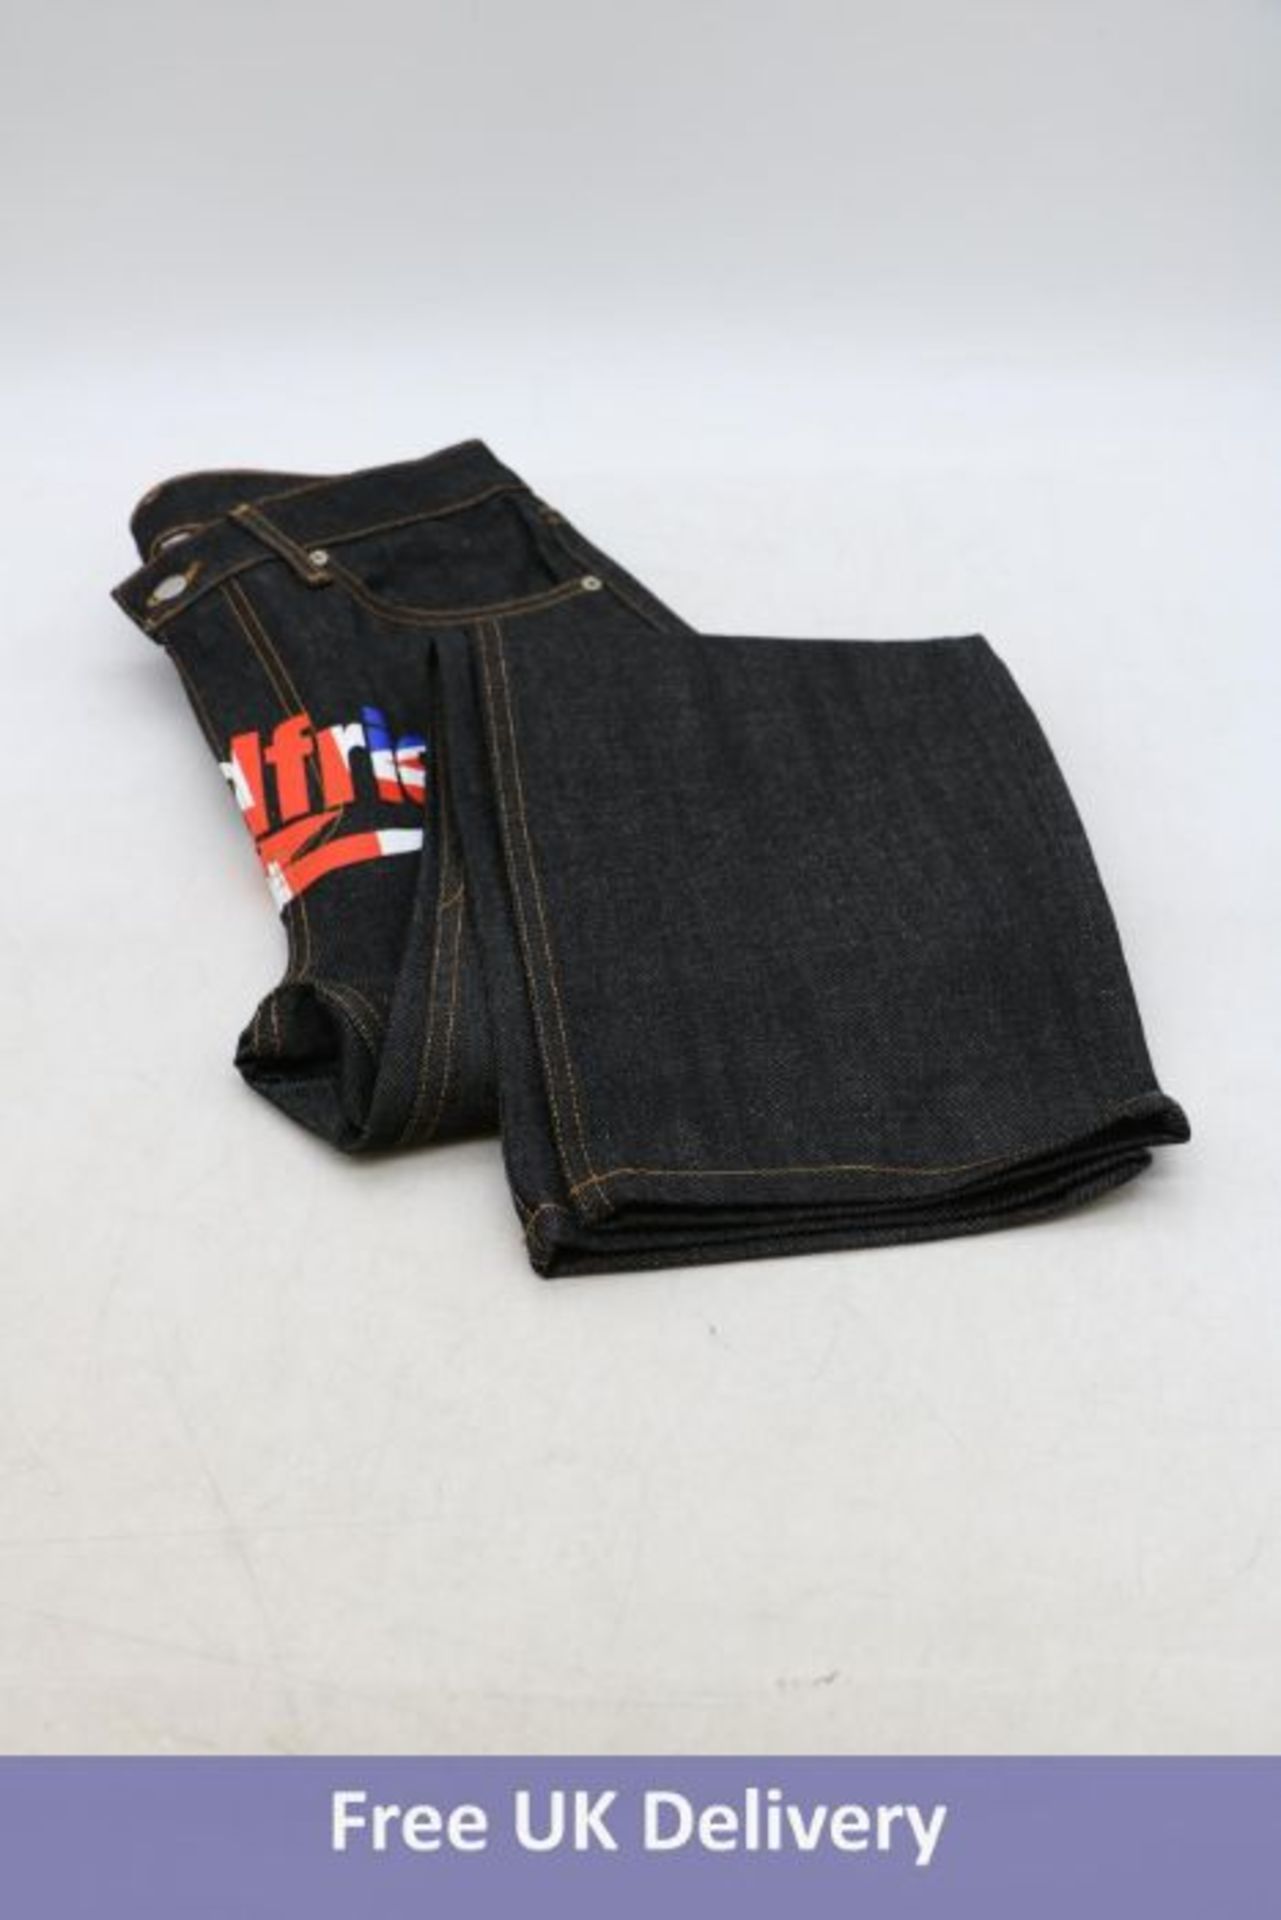 Three BadFriend Men's Streetwear, Y2K Union Jack Denim Jeans, Black, 2x 30W, 1x 32W - Image 2 of 3